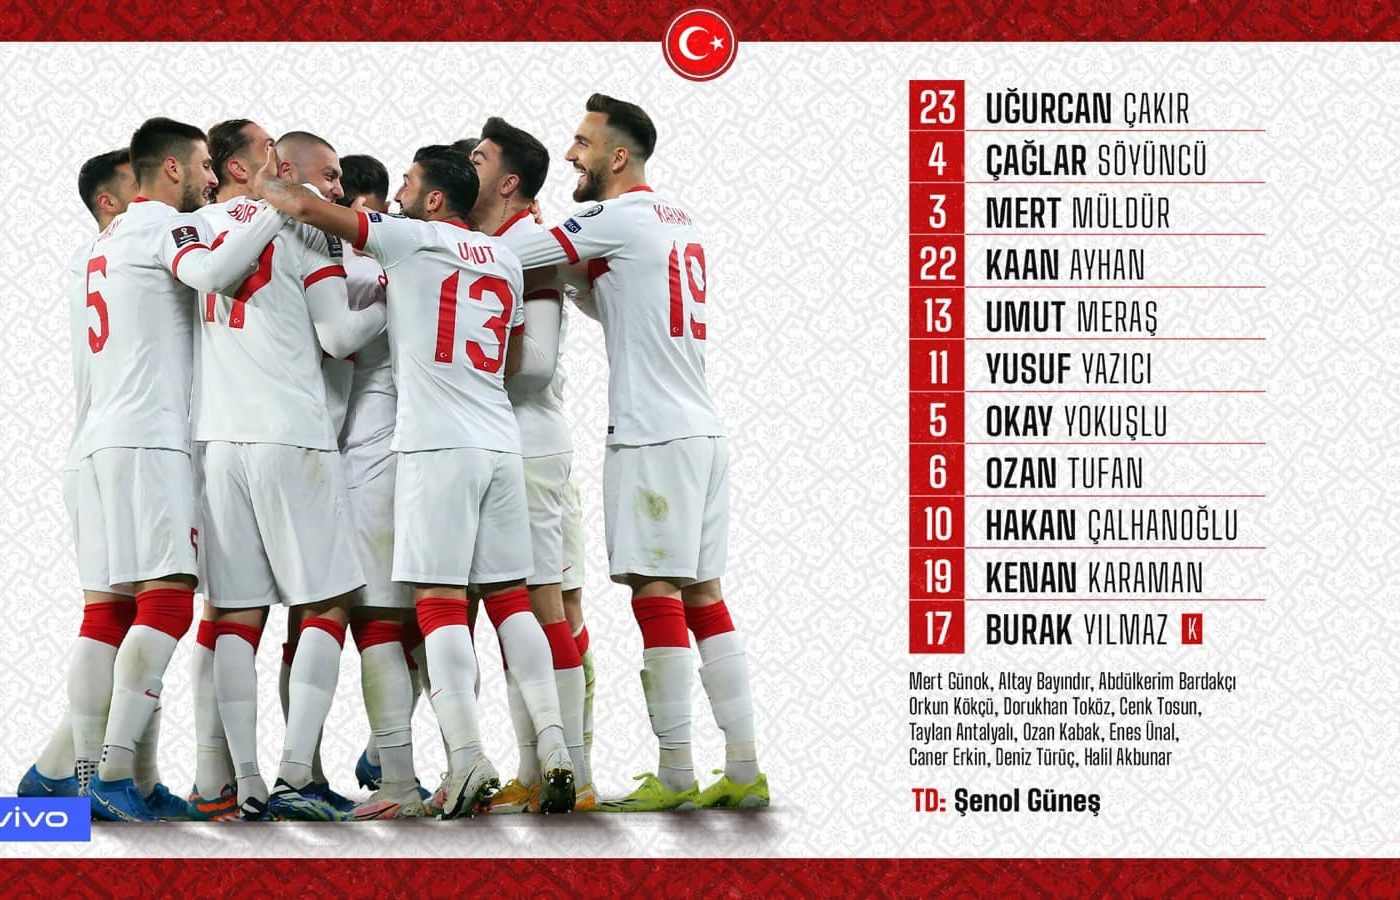 Thổ Nhĩ Kỳ đá ở bảng nào, đá với đội nào ở Euro 2020-2021